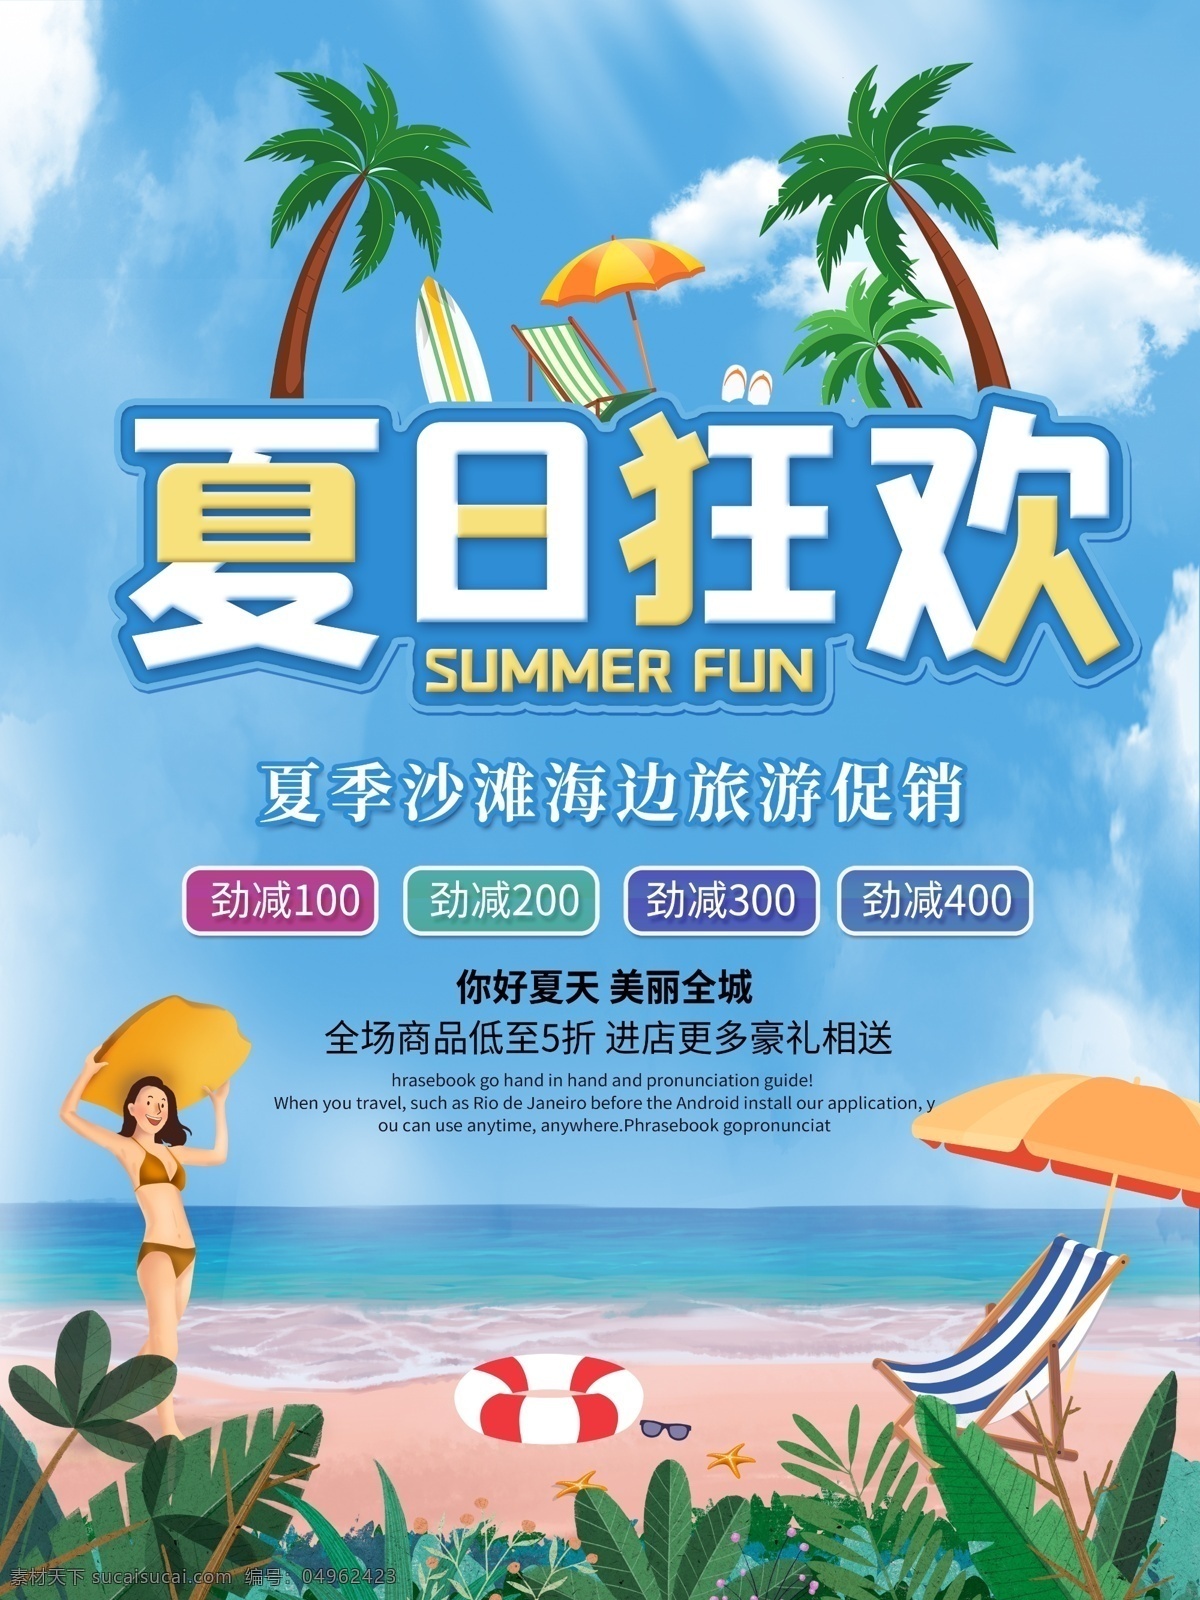 夏日 狂欢 旅游 季 海边 沙滩 促销 夏日狂欢 旅游季 海报 移动 端 界面设计